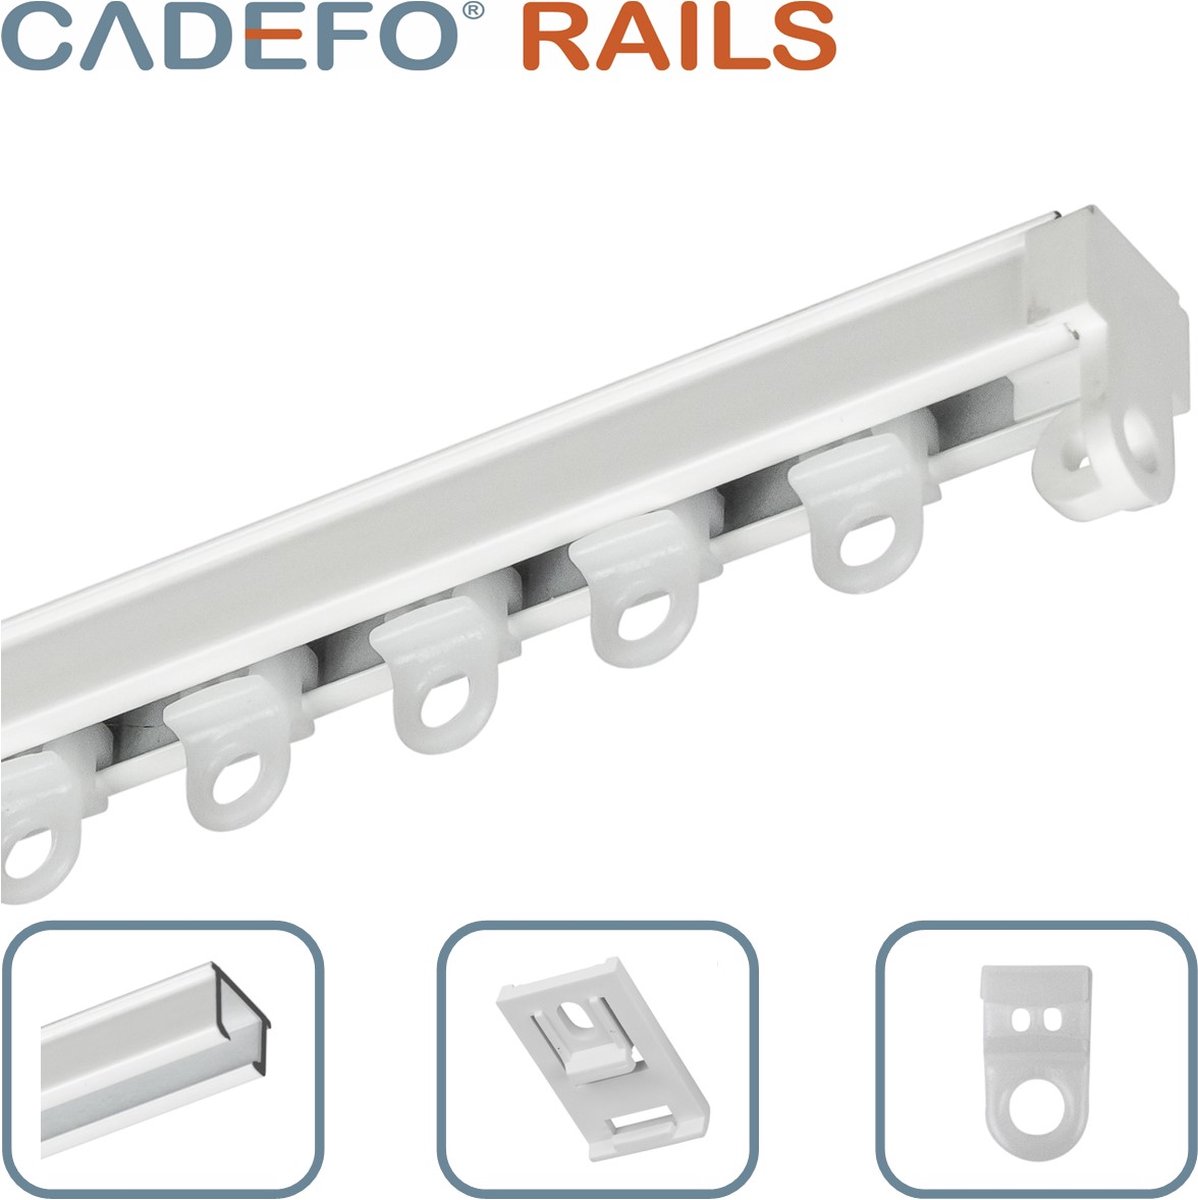 CADEFO RAILS (551 - 600 cm) Gordijnrails - Compleet op maat! - UIT 1 STUK - Leverbaar tot 6 meter - Plafondbevestiging - Lengte 596 cm